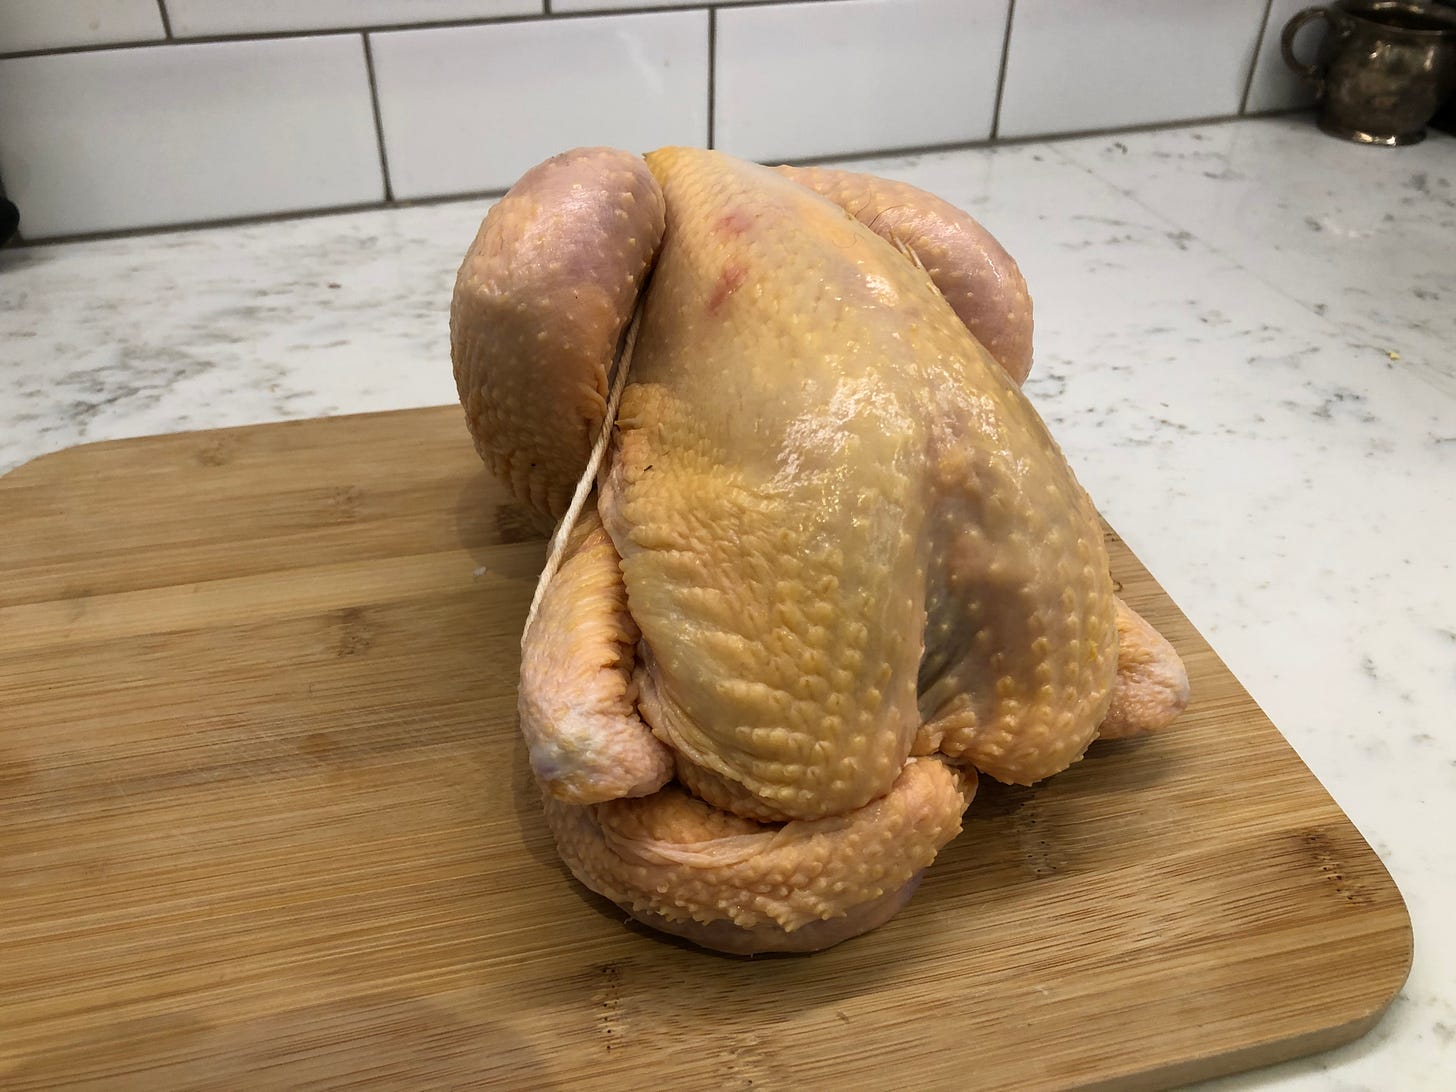 Raw chicken on cutting board